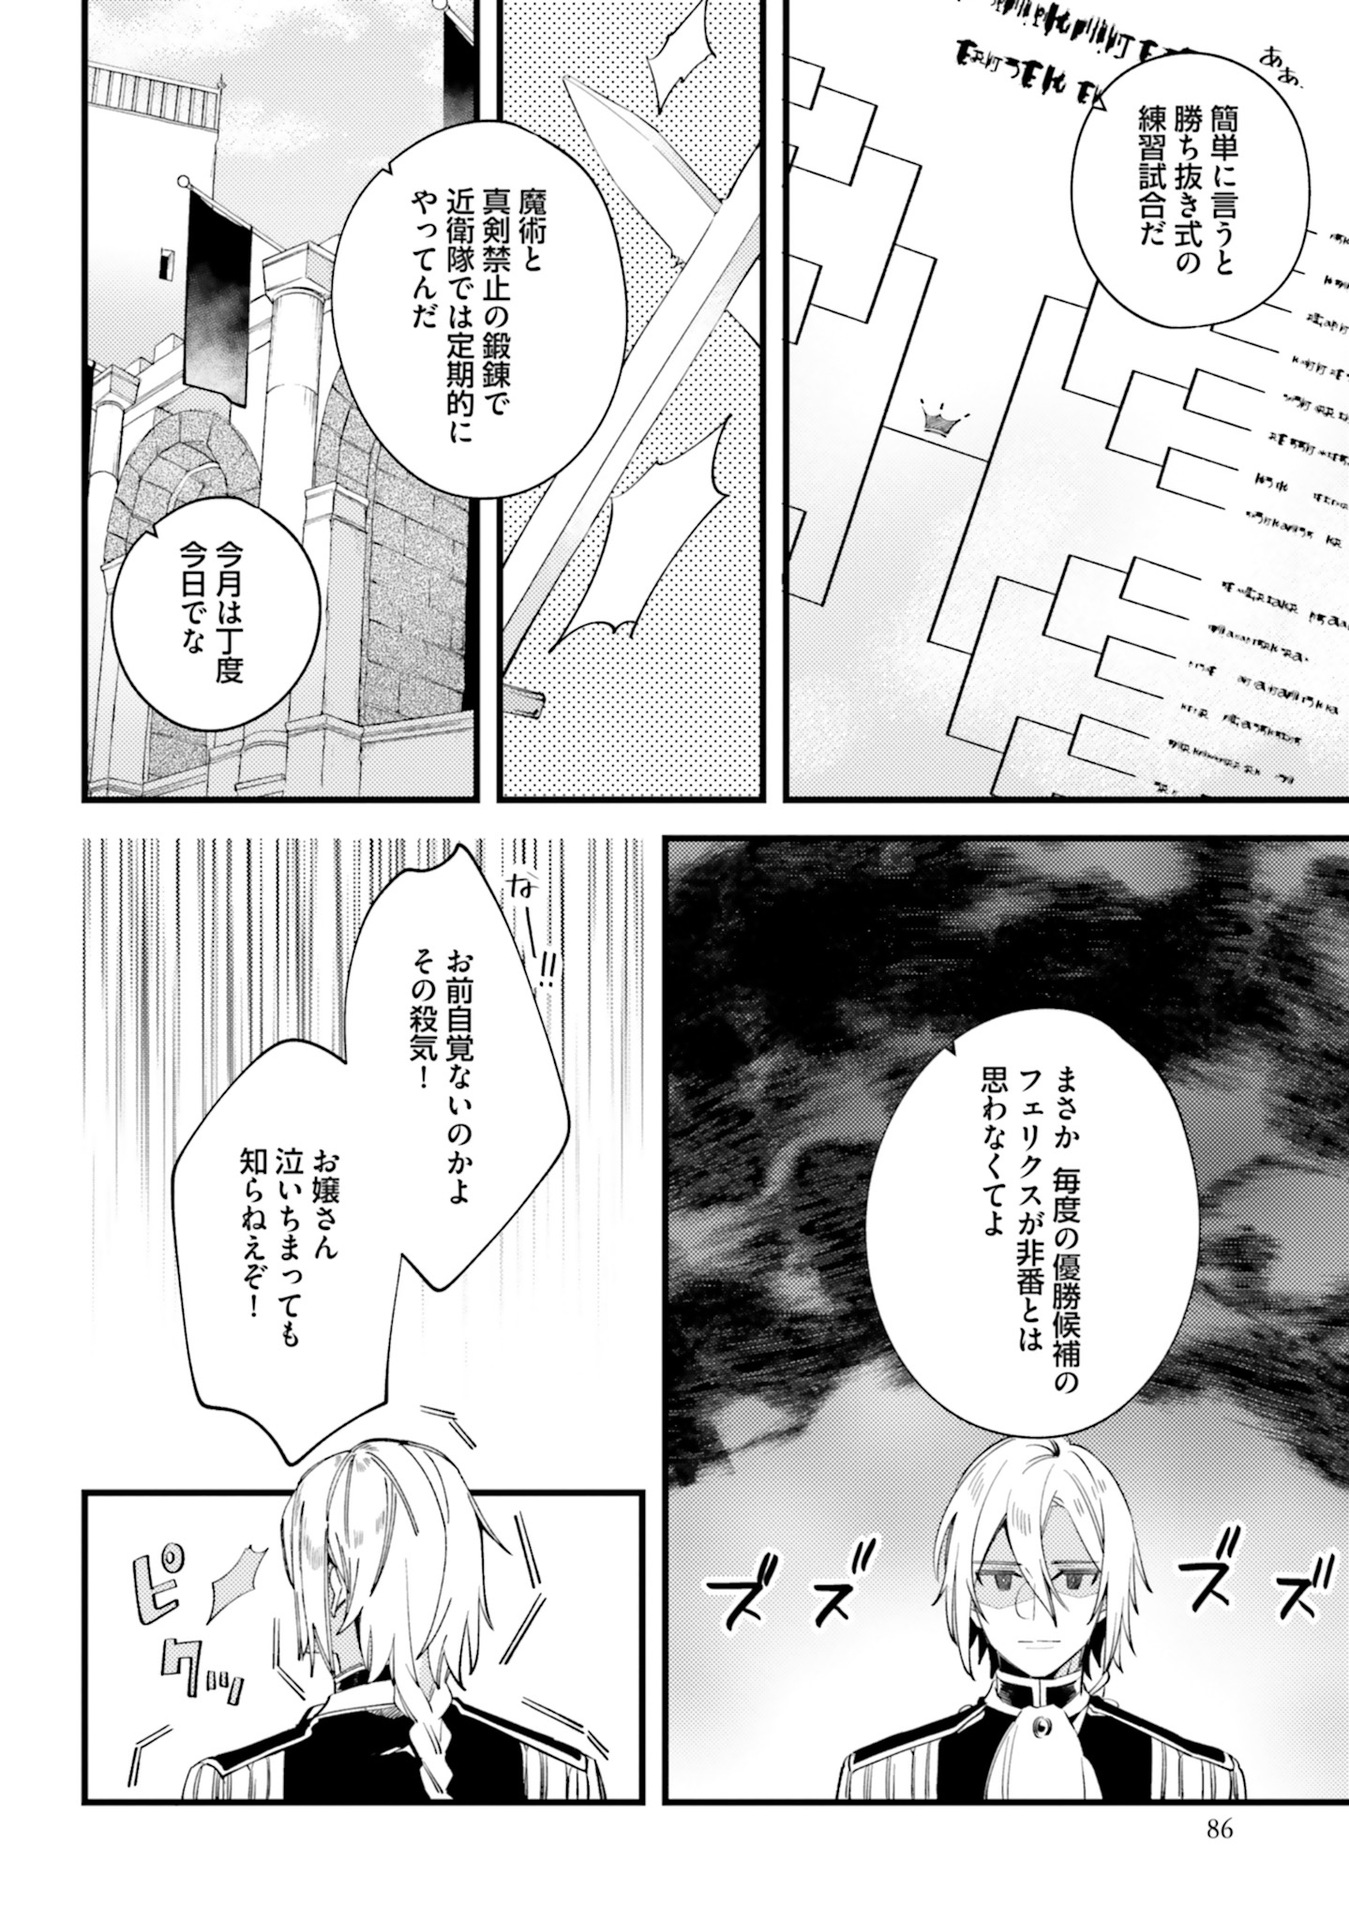 Yubiwa no Eranda Kon'yakusha - Chapter 3 - Page 24